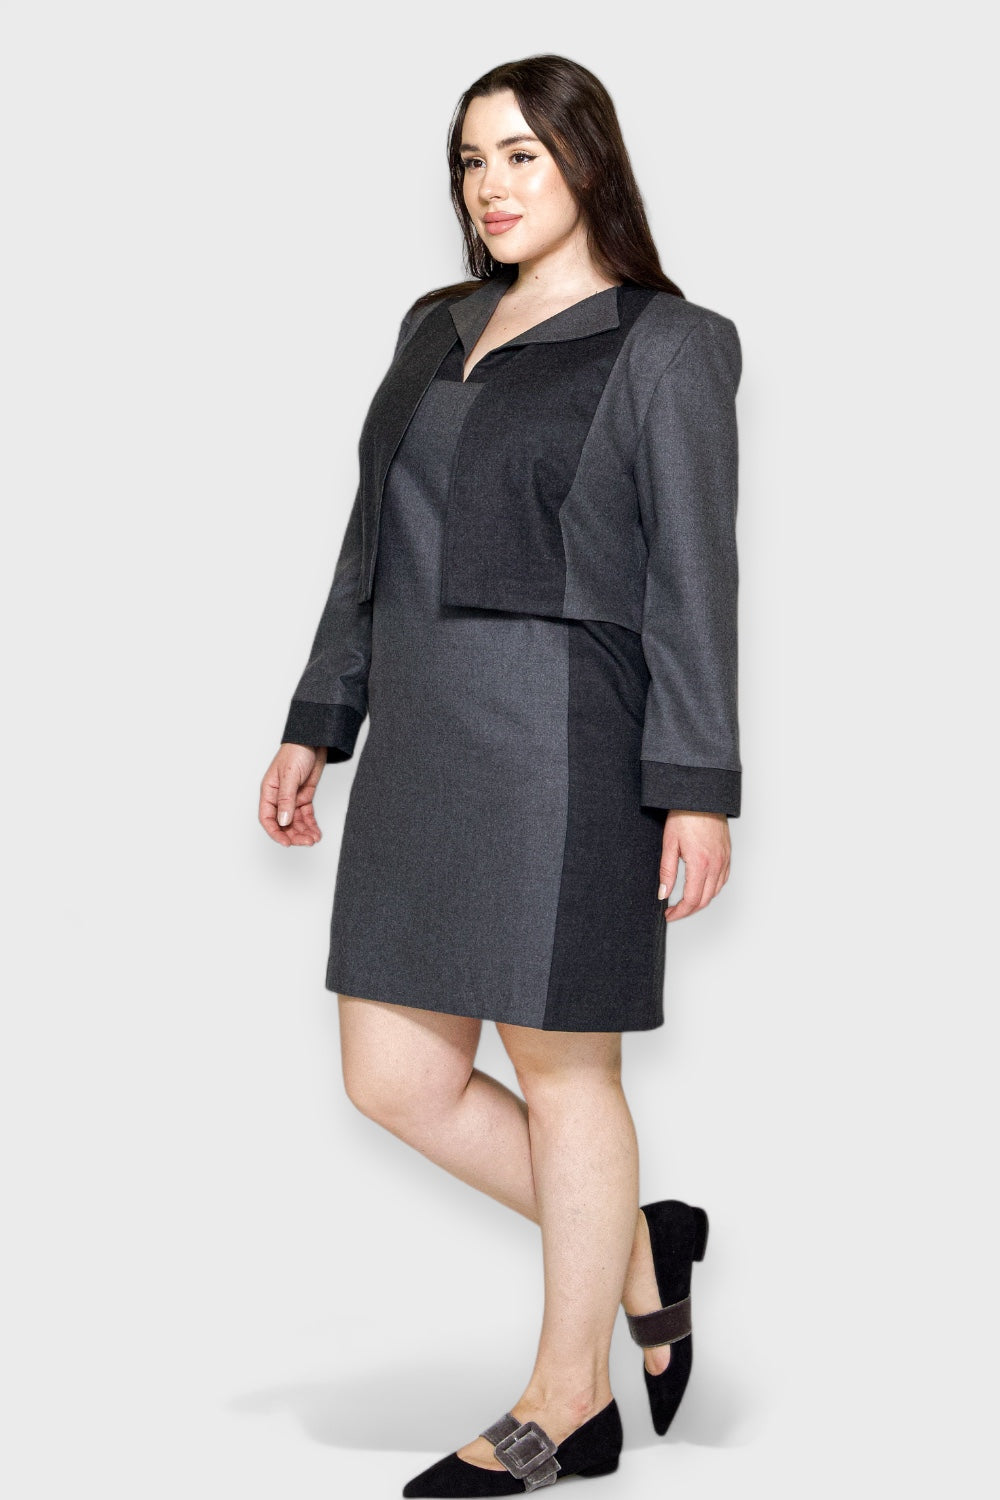 Pantheon Gray Wool Plus Size Dress & Jacket Set by Sara Sabella Italian Women's Clothing